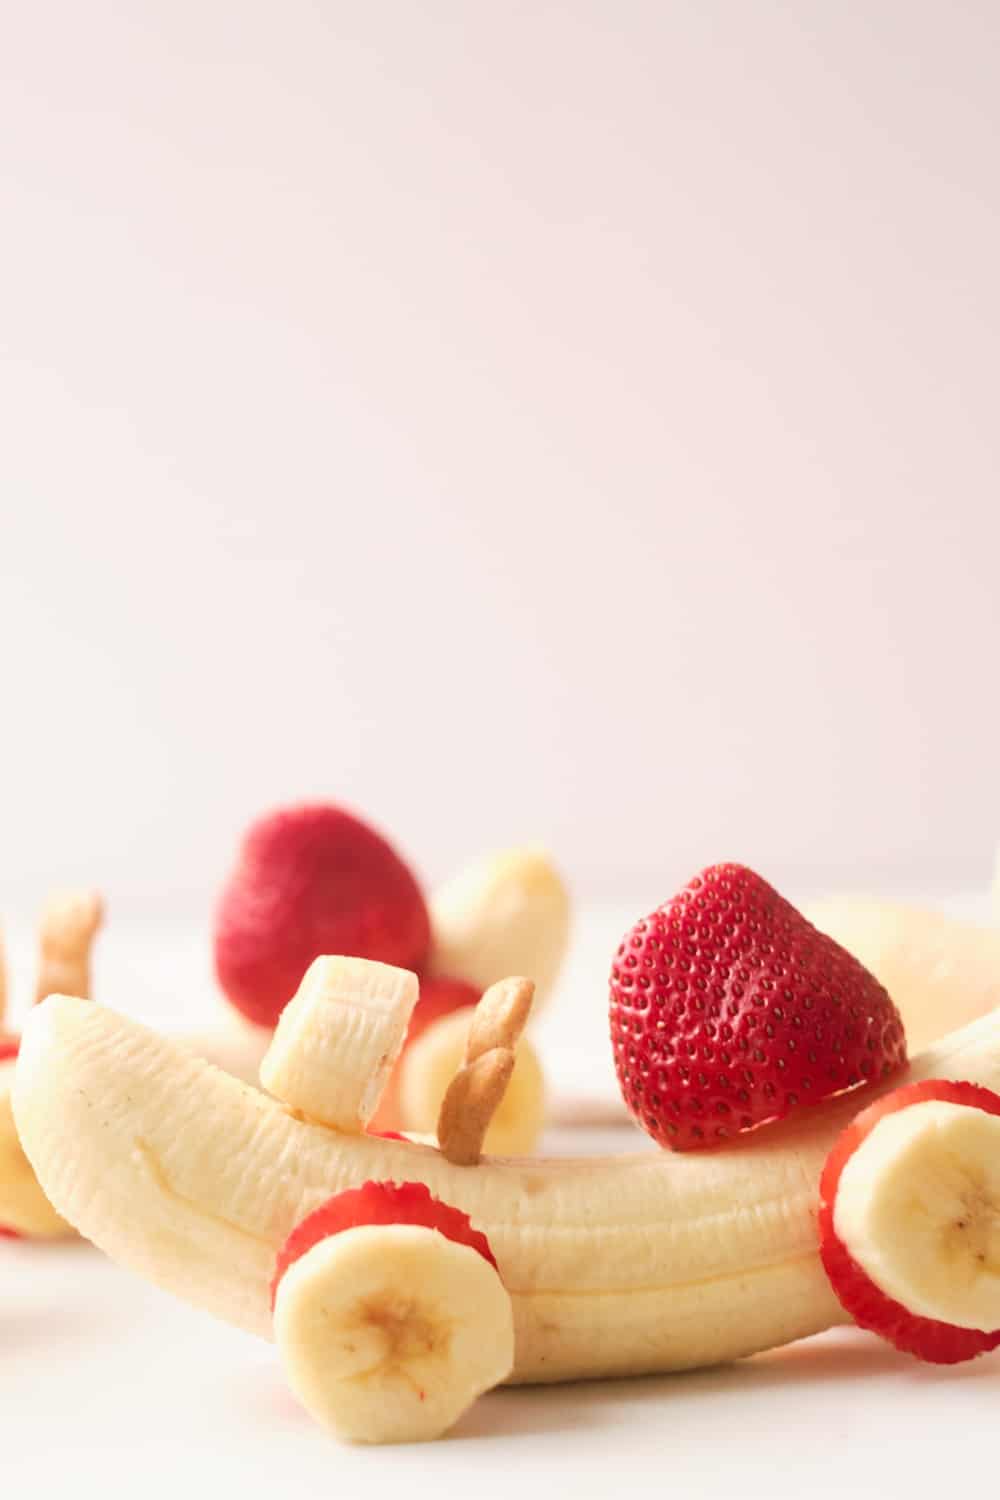 Banana Strawberry Car Fruit Snack For Kids